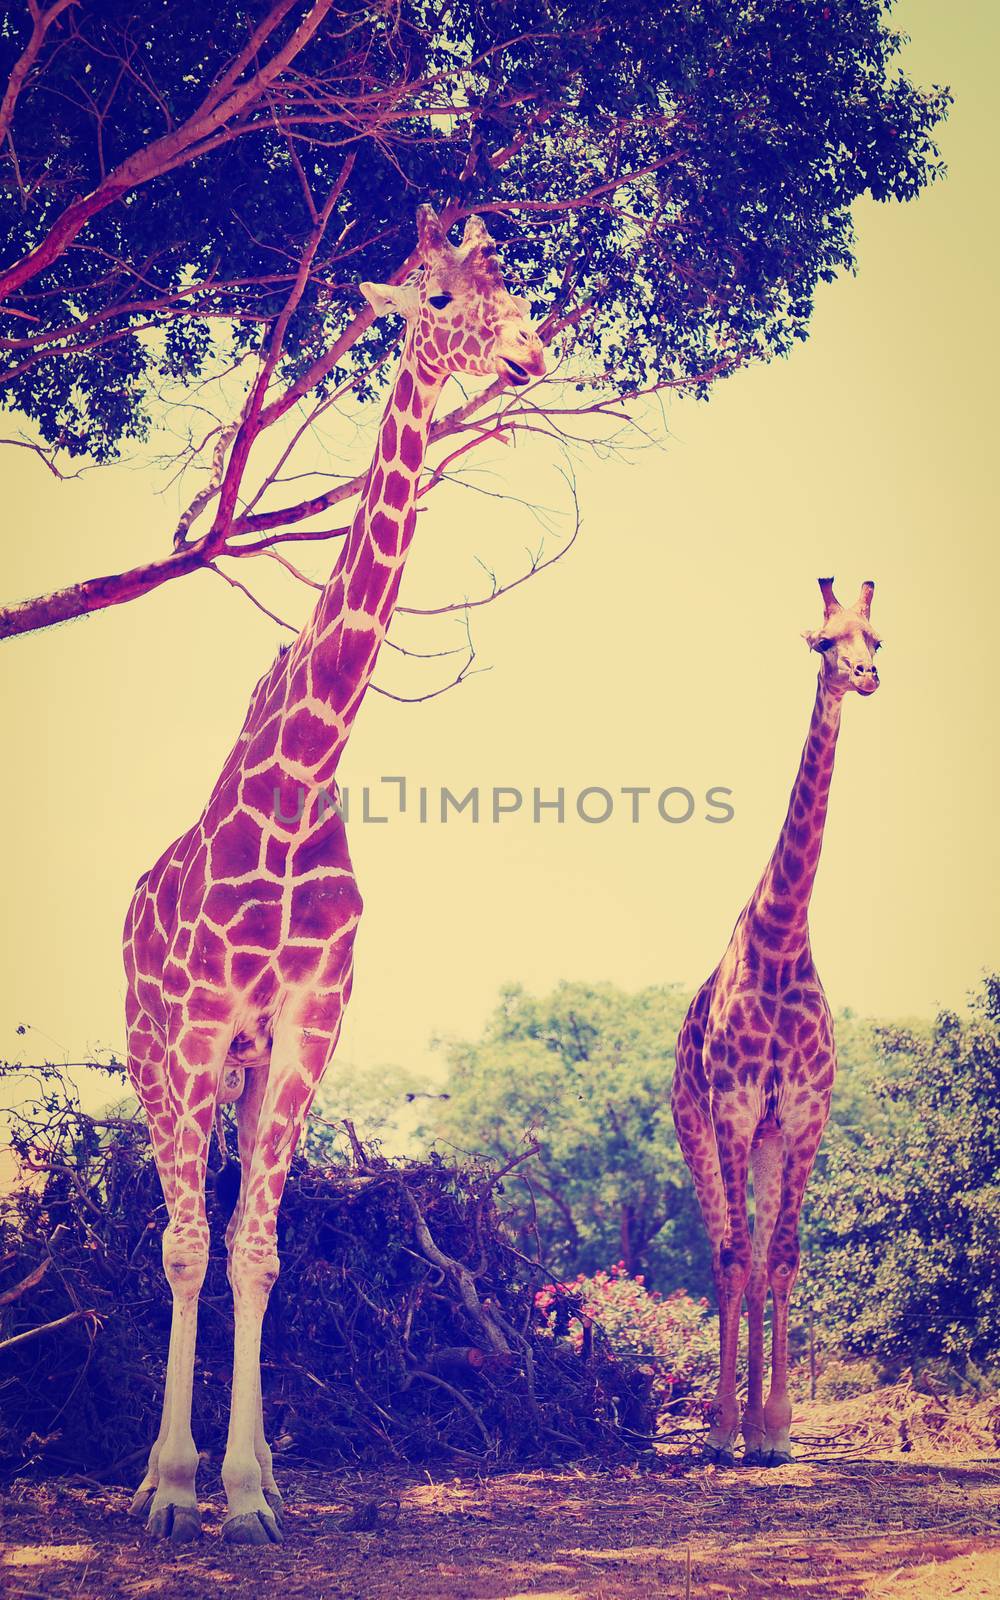 Giraffe by gkuna